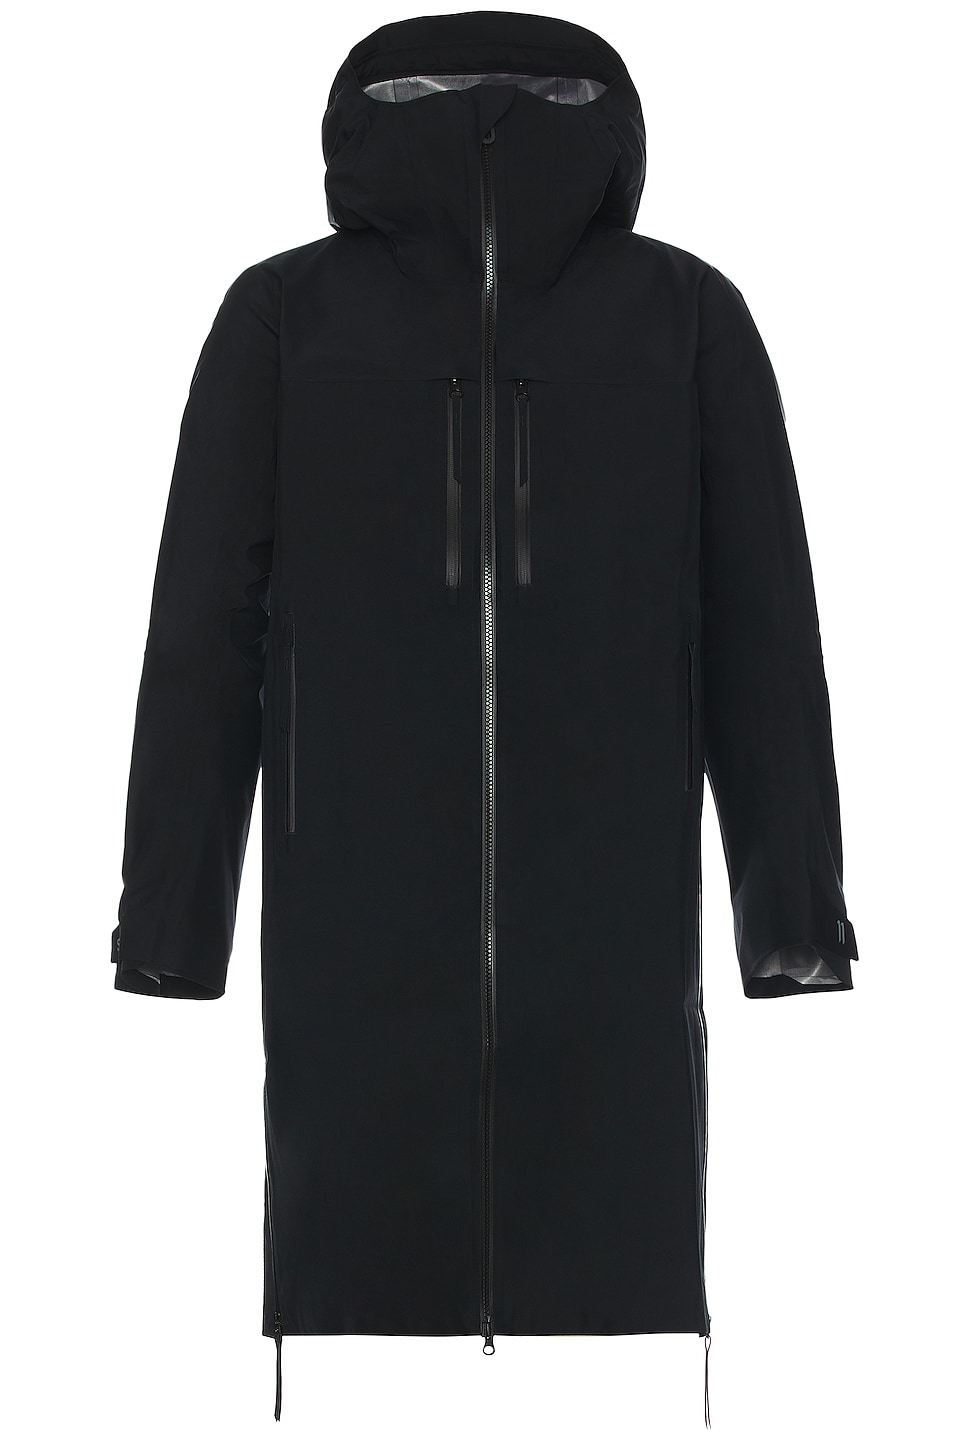 Куртка Salomon X 11 By Boris Bidjan Saberi, цвет Deep Black